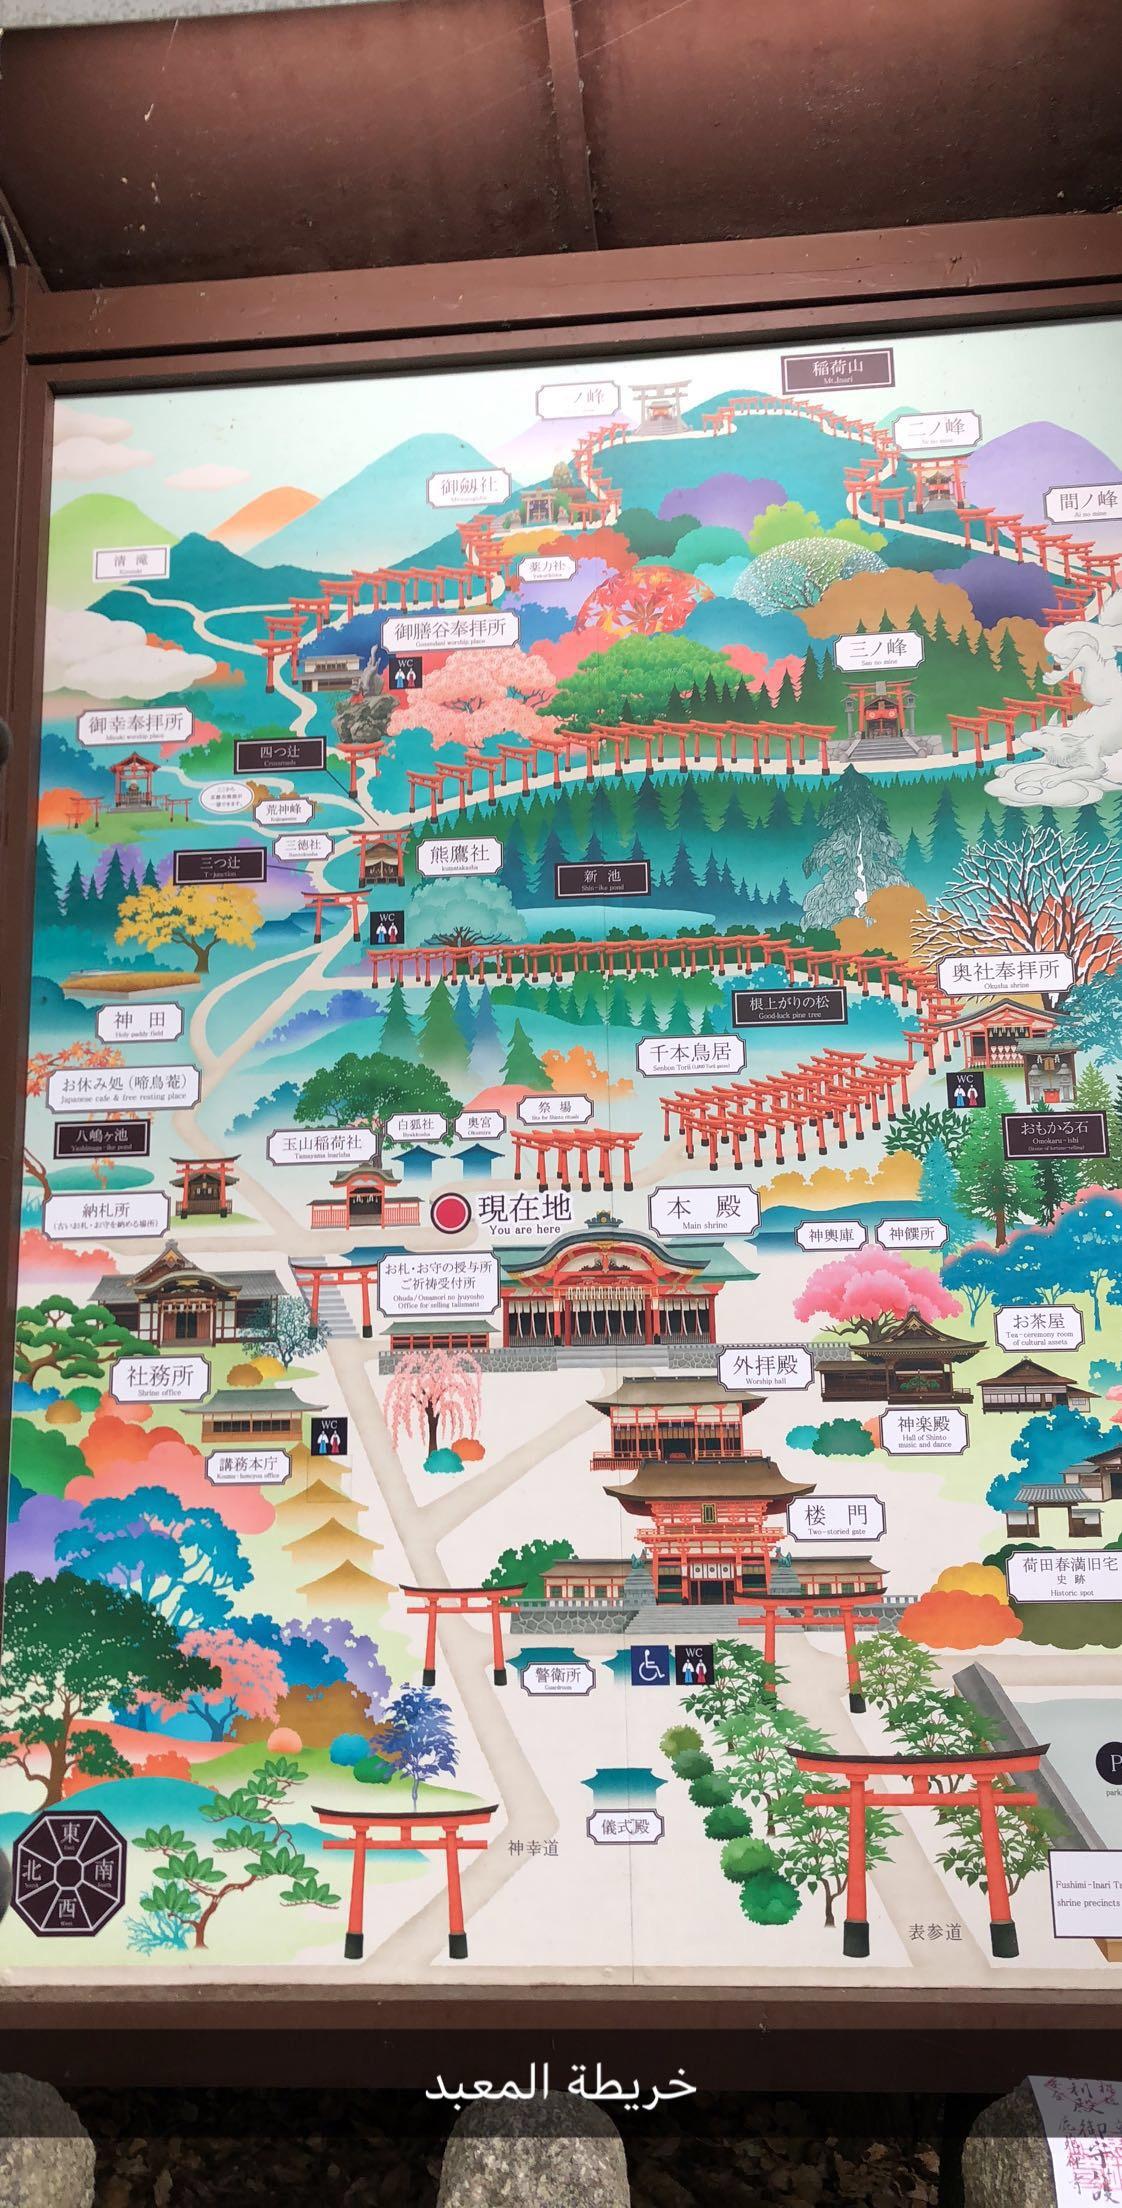 تقرير كامل عن رحلتي إلى اليابان مع جداول سياحية يومية